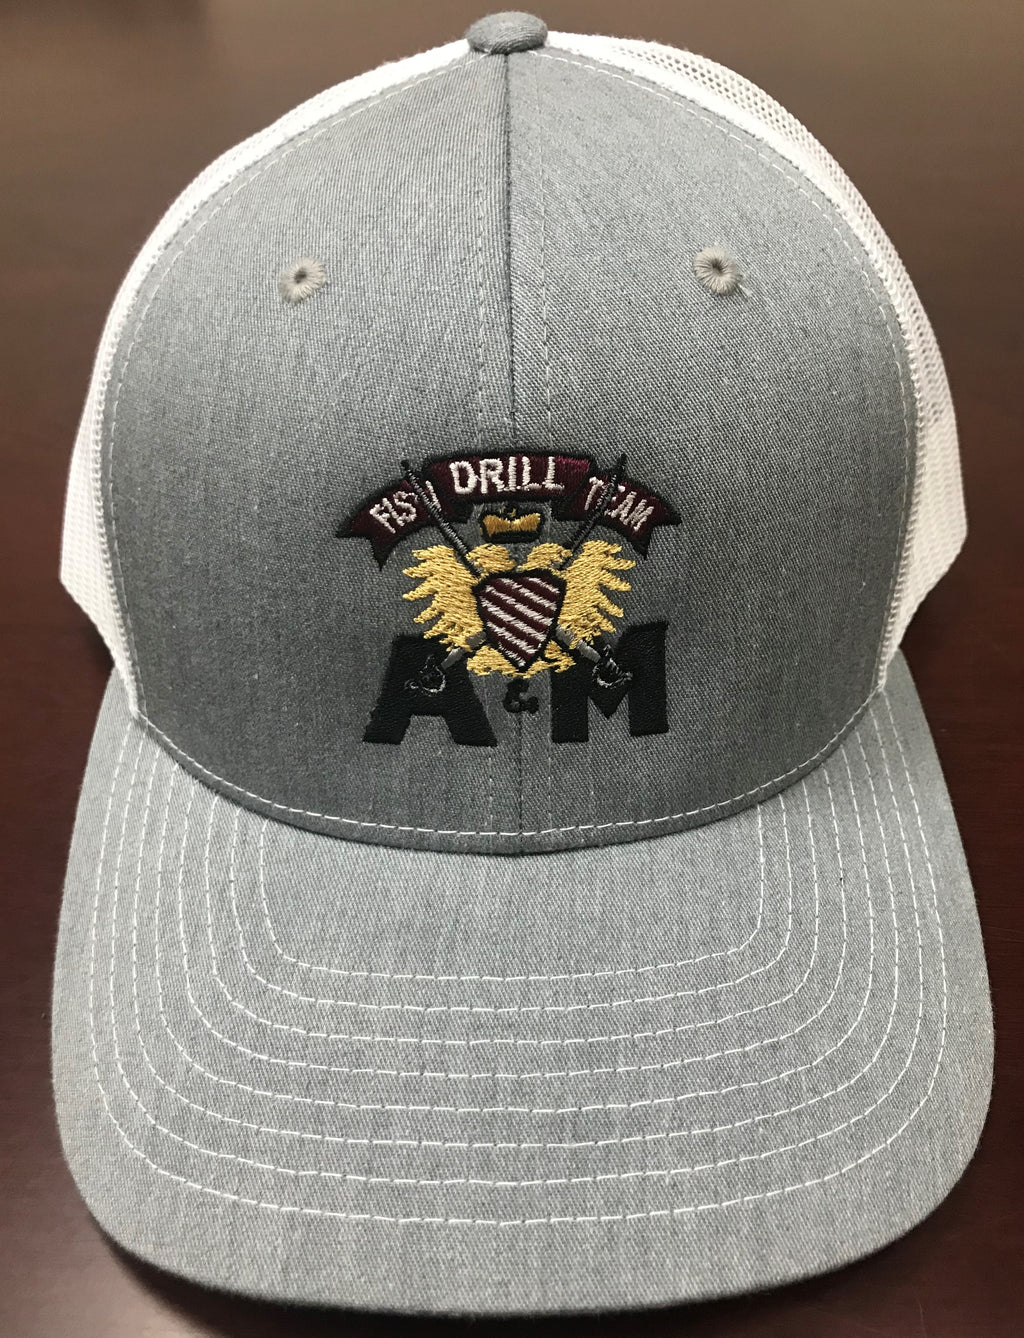 Fish Drill Team Trucker Hat